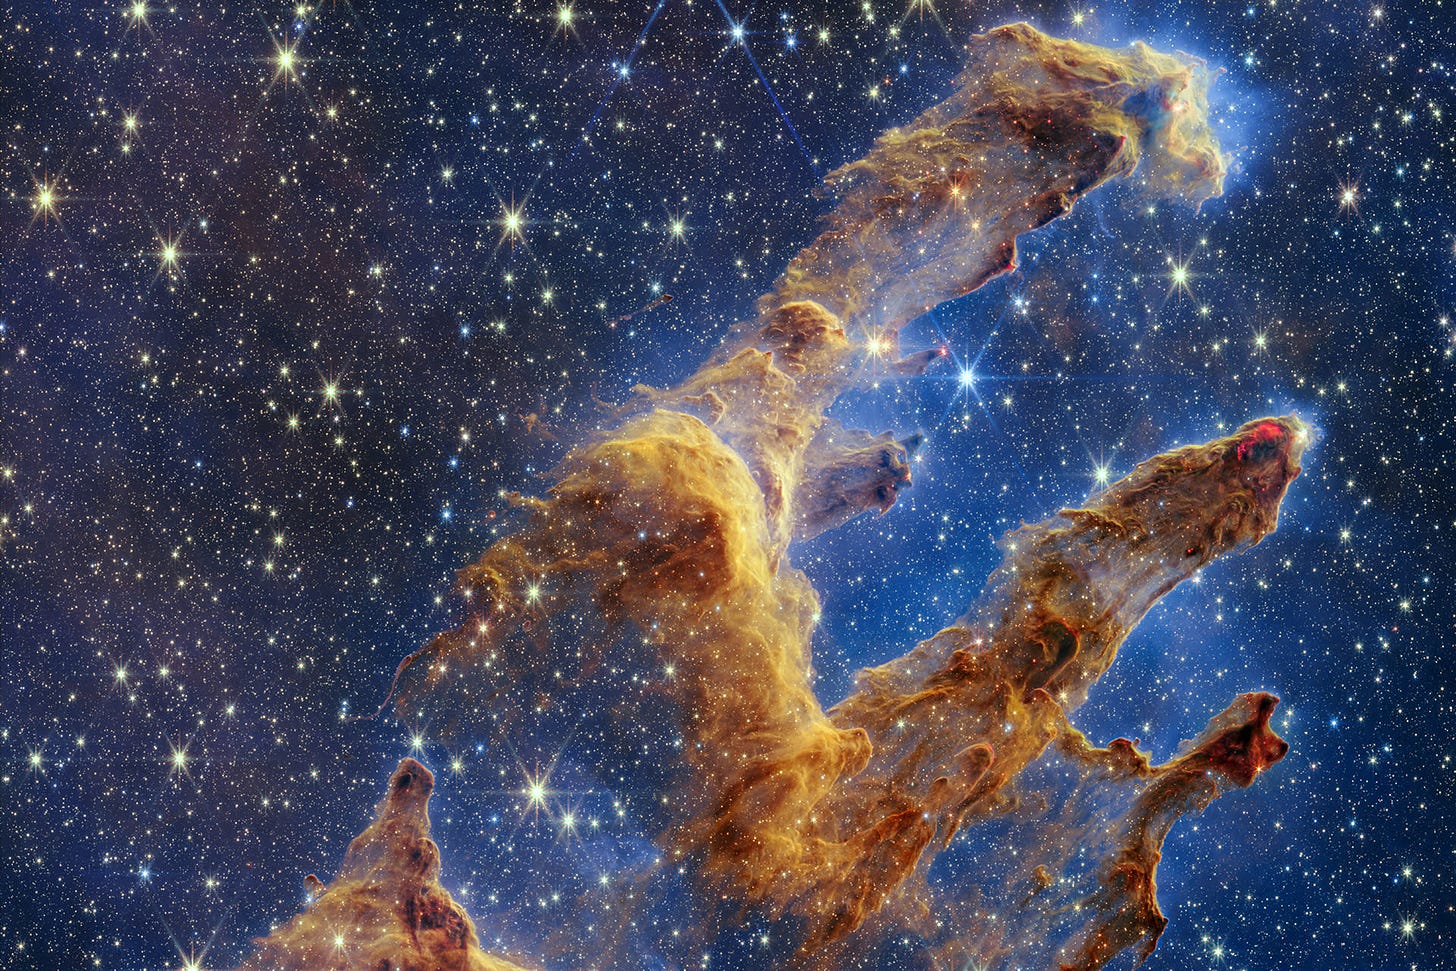 James Webb telescope captures Pillars of Creation in unprecedented detail |  Engadget